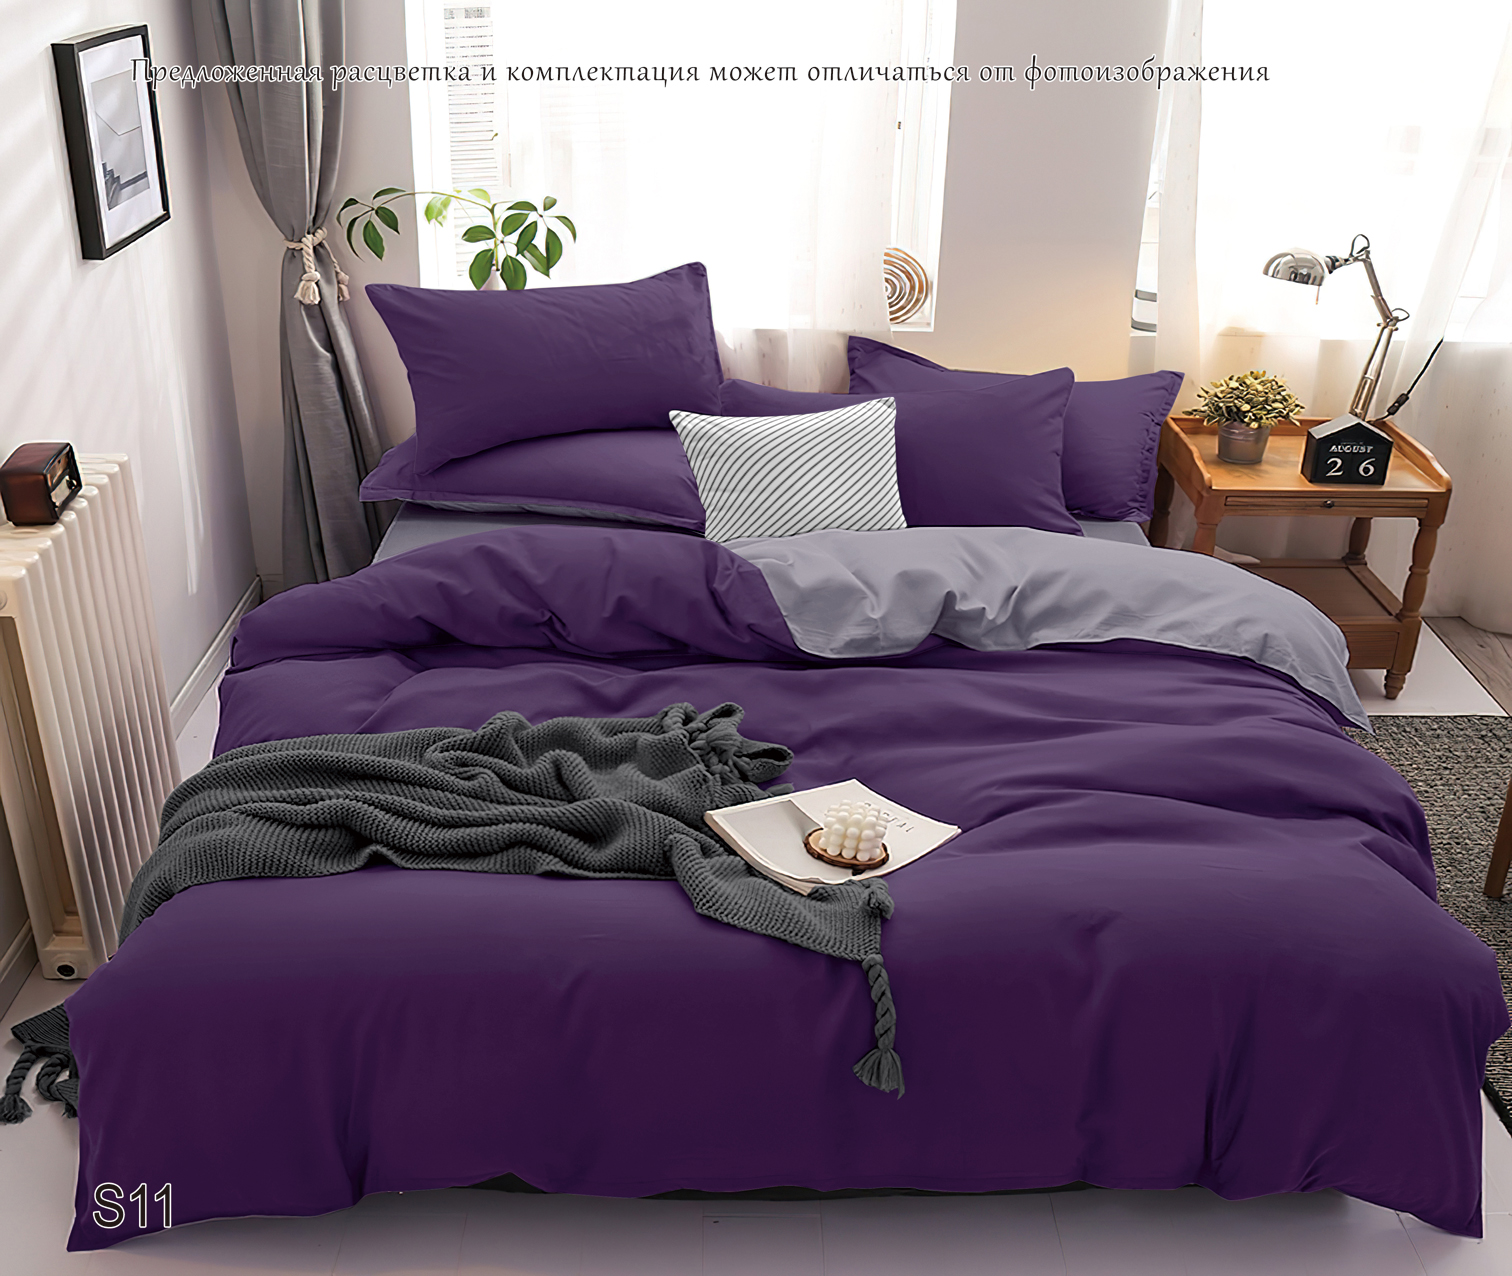 Комплект постельного белья PAVLine Манетти полисатин 1.5 сп. темно-фиолетовый/серый S11 - фото 3